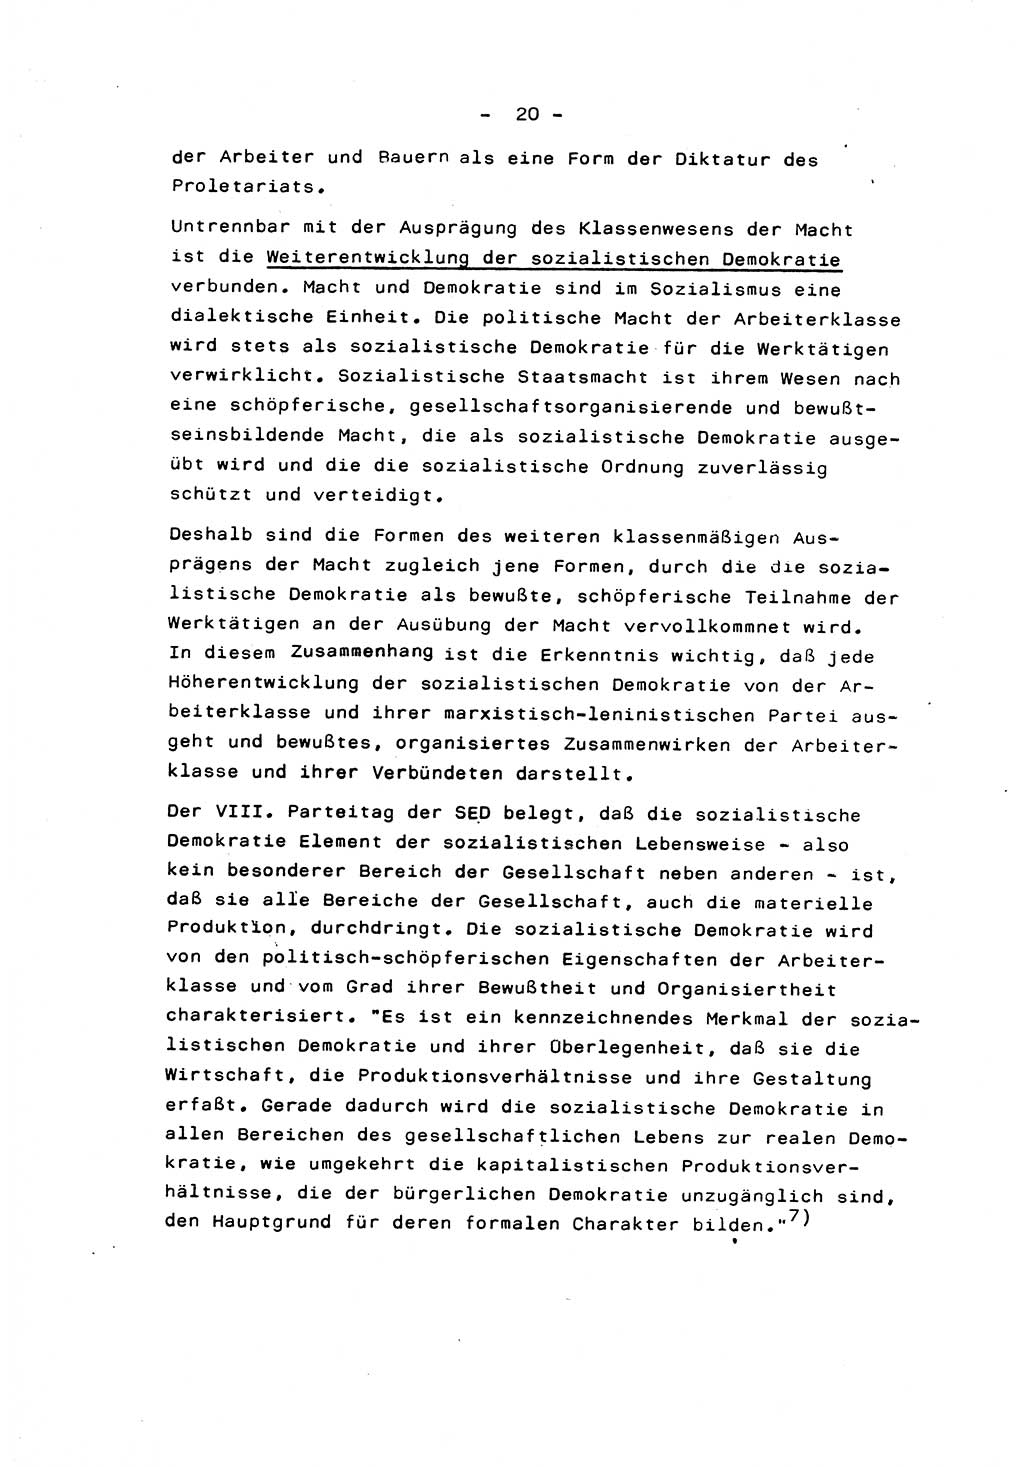 Marxistisch-leninistische Staats- und Rechtstheorie [Deutsche Demokratische Republik (DDR)] 1975, Seite 20 (ML St.-R.-Th. DDR 1975, S. 20)